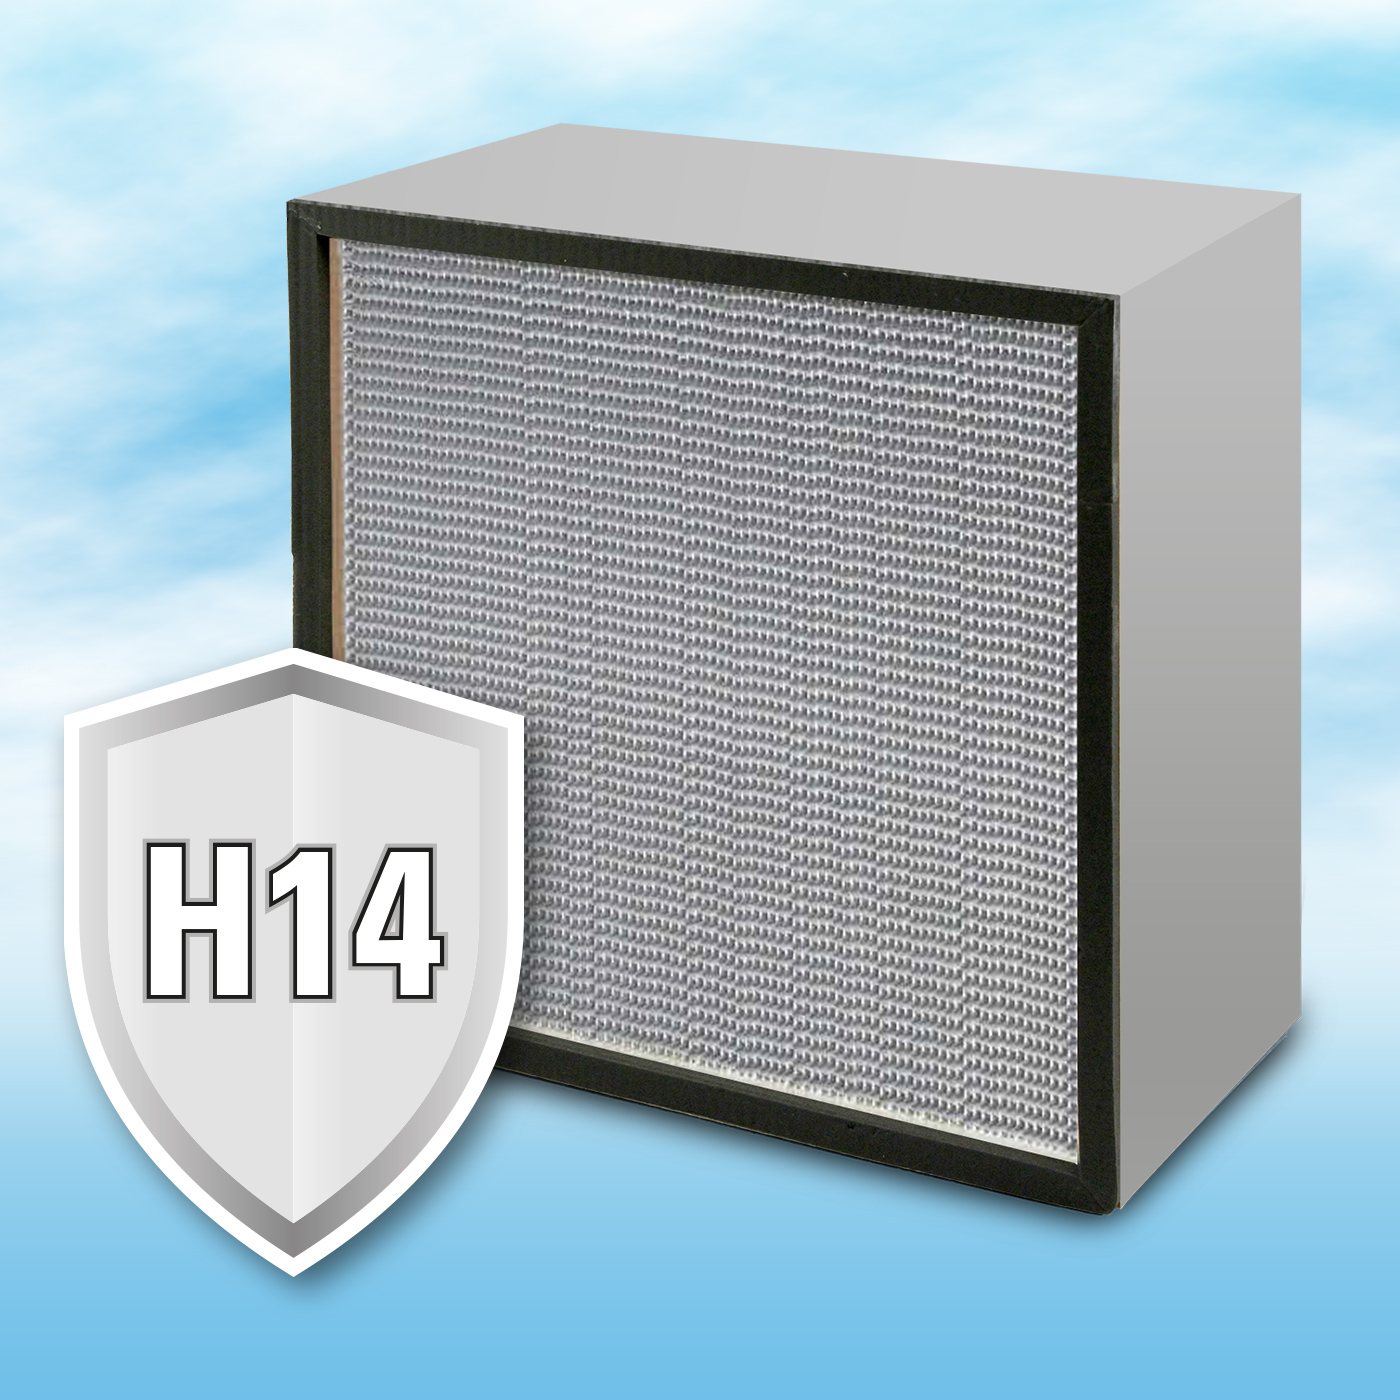 Les filtres à particules flottantes H14 sont maintenant disponibles pour tous les purificateurs d'air TAC